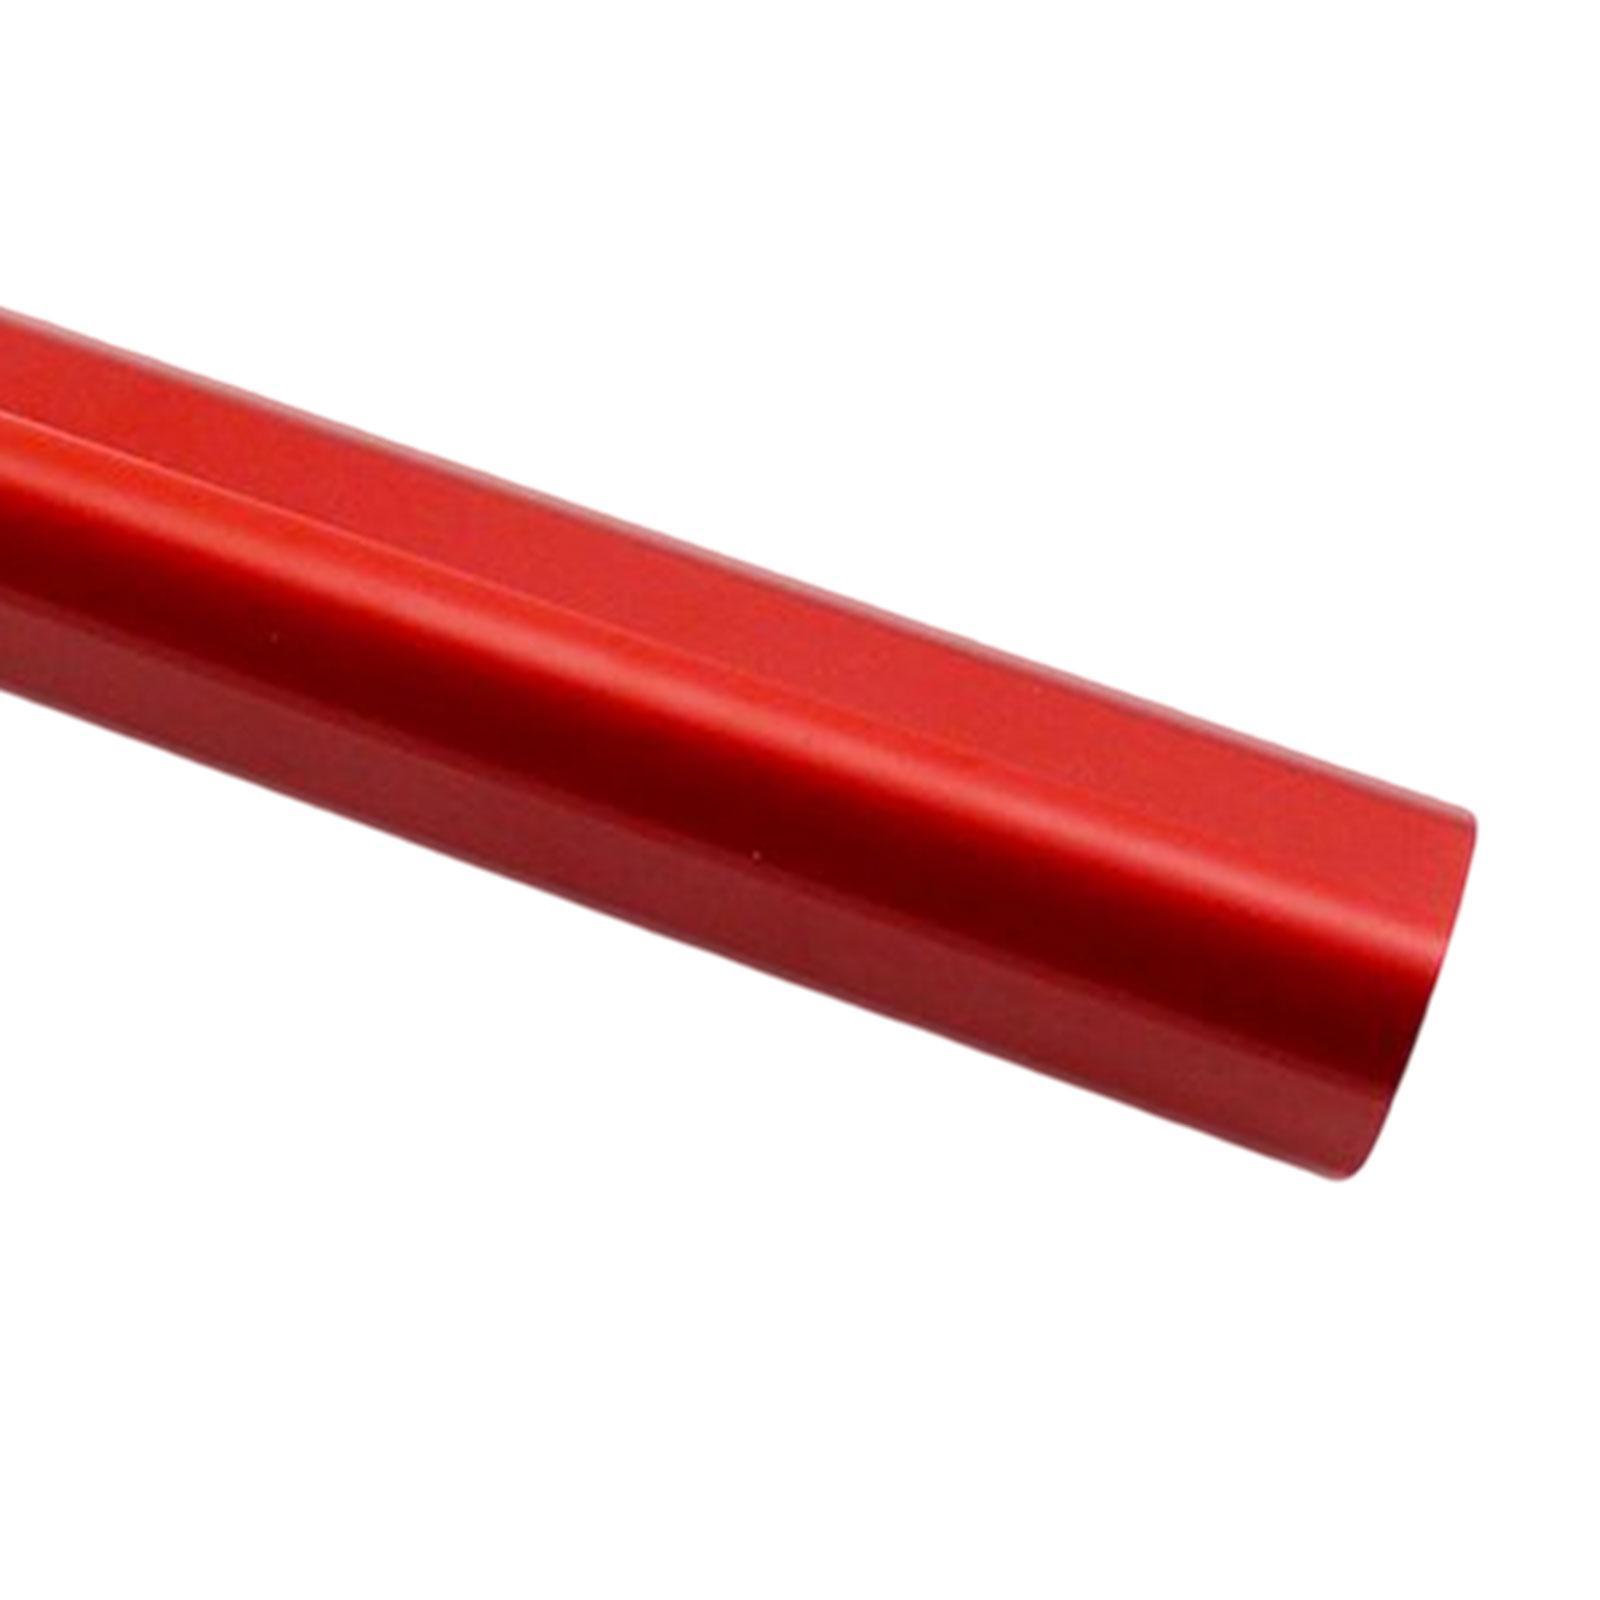 Reinforcing Bracket Stabilizer Rod for   125 Red